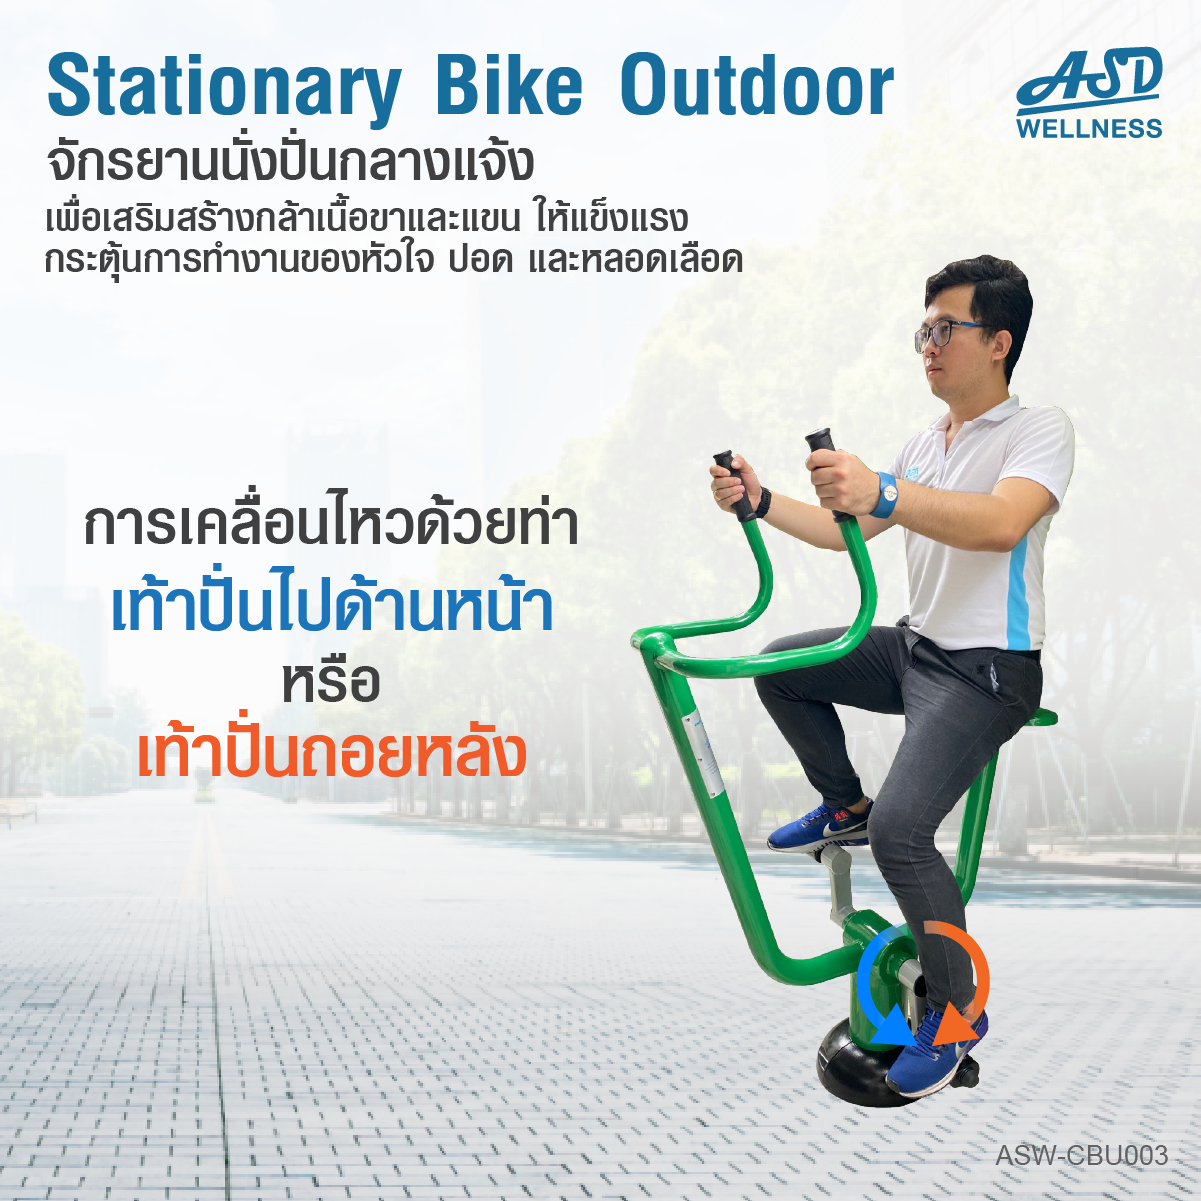 จักรยานนั่งปั่นออกกำลังกาย แบบ Cardio กลางแจ้ง Stationary Bike Outdoor -3